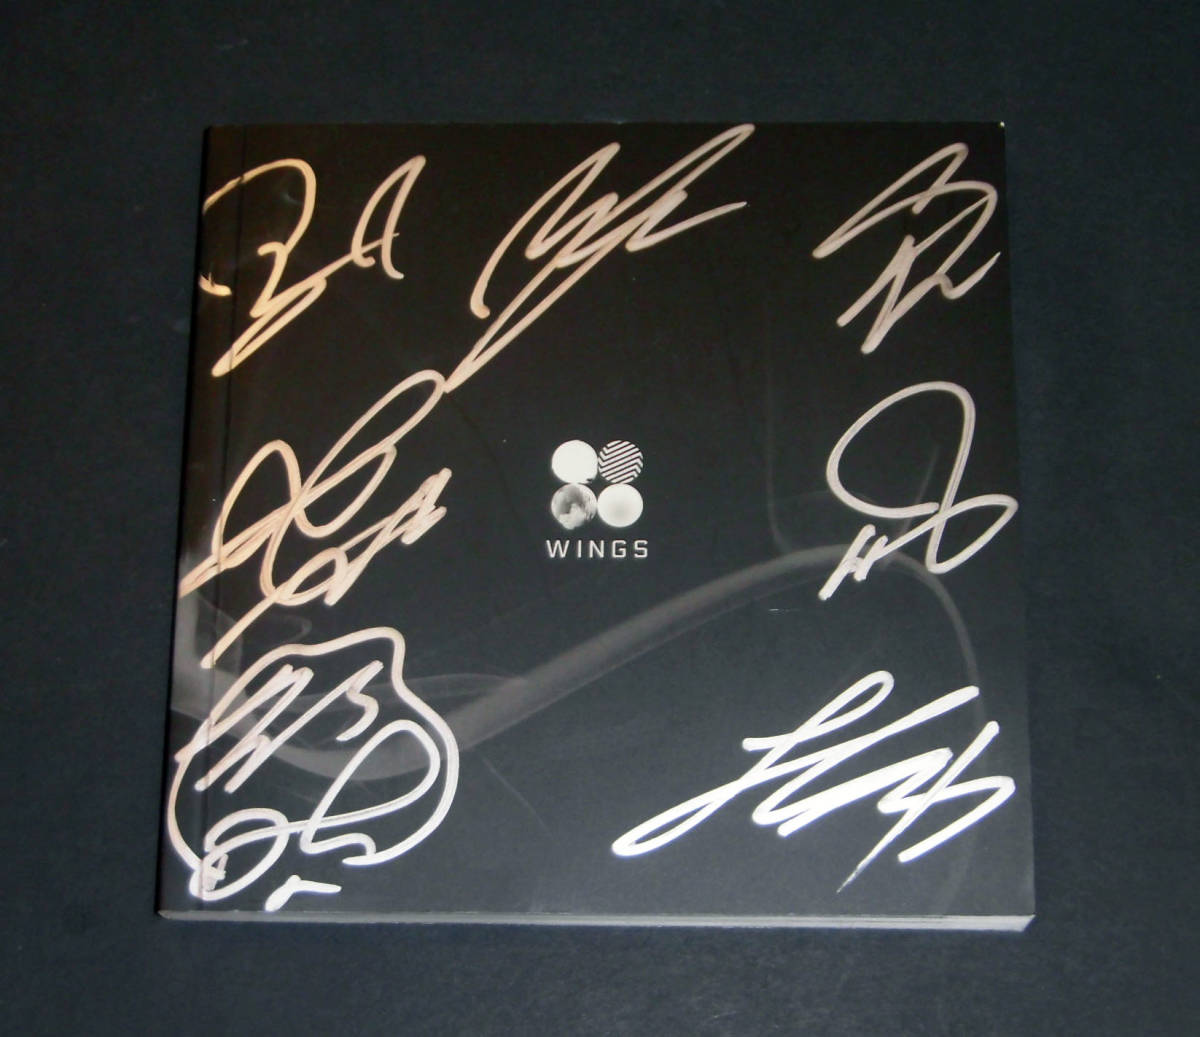 送料無料限定セール中 BTS メンバー全員の直筆サイン入り Autographed